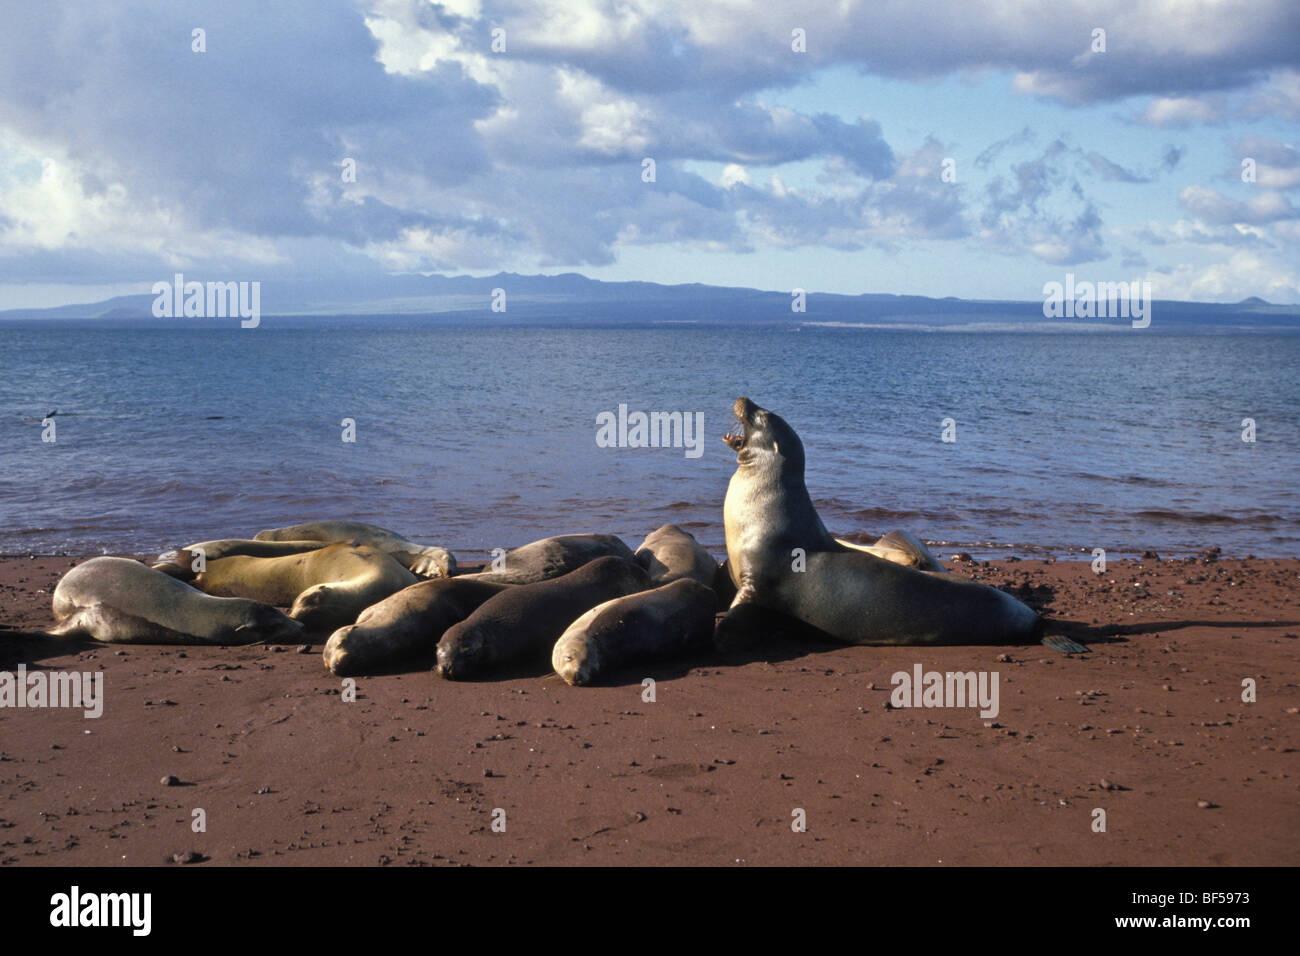 Les Lions de mer de Californie (Zalophus californianus wollebaeki), Galapagos, Equateur, Amérique du Sud Banque D'Images